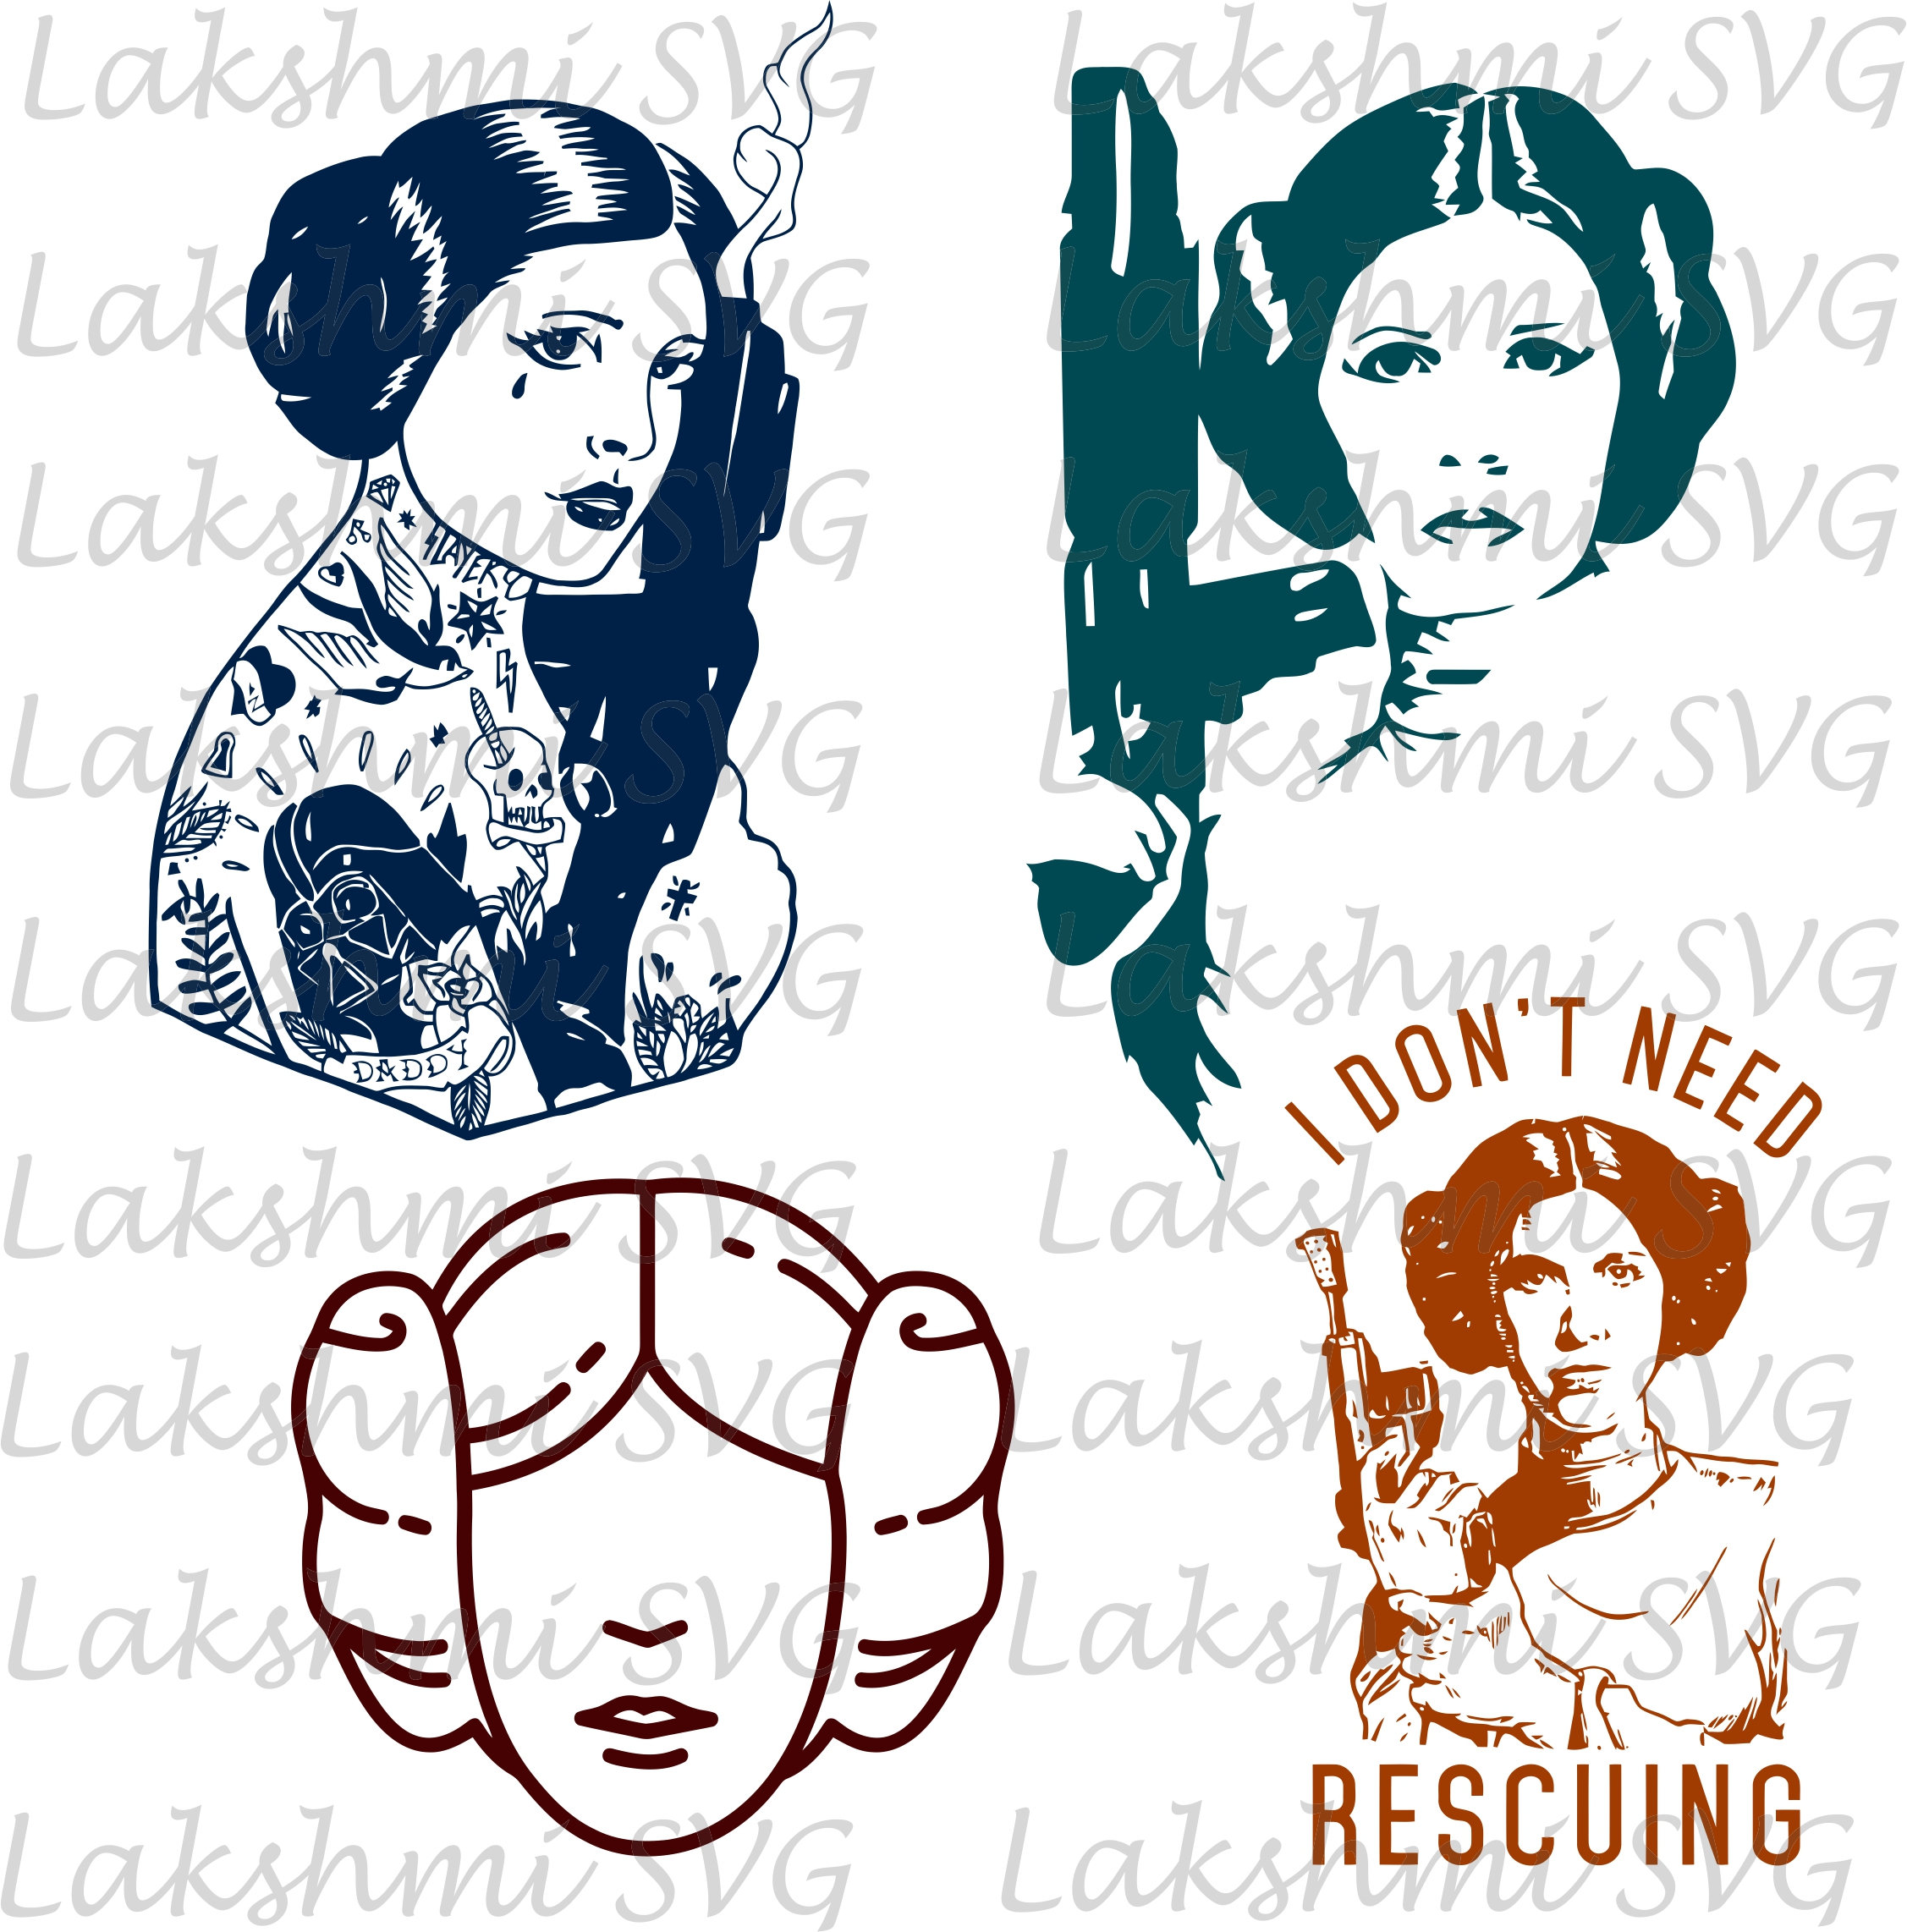 Download Leia svgStar Wars svgPrincess Leia svg Princess svg Star